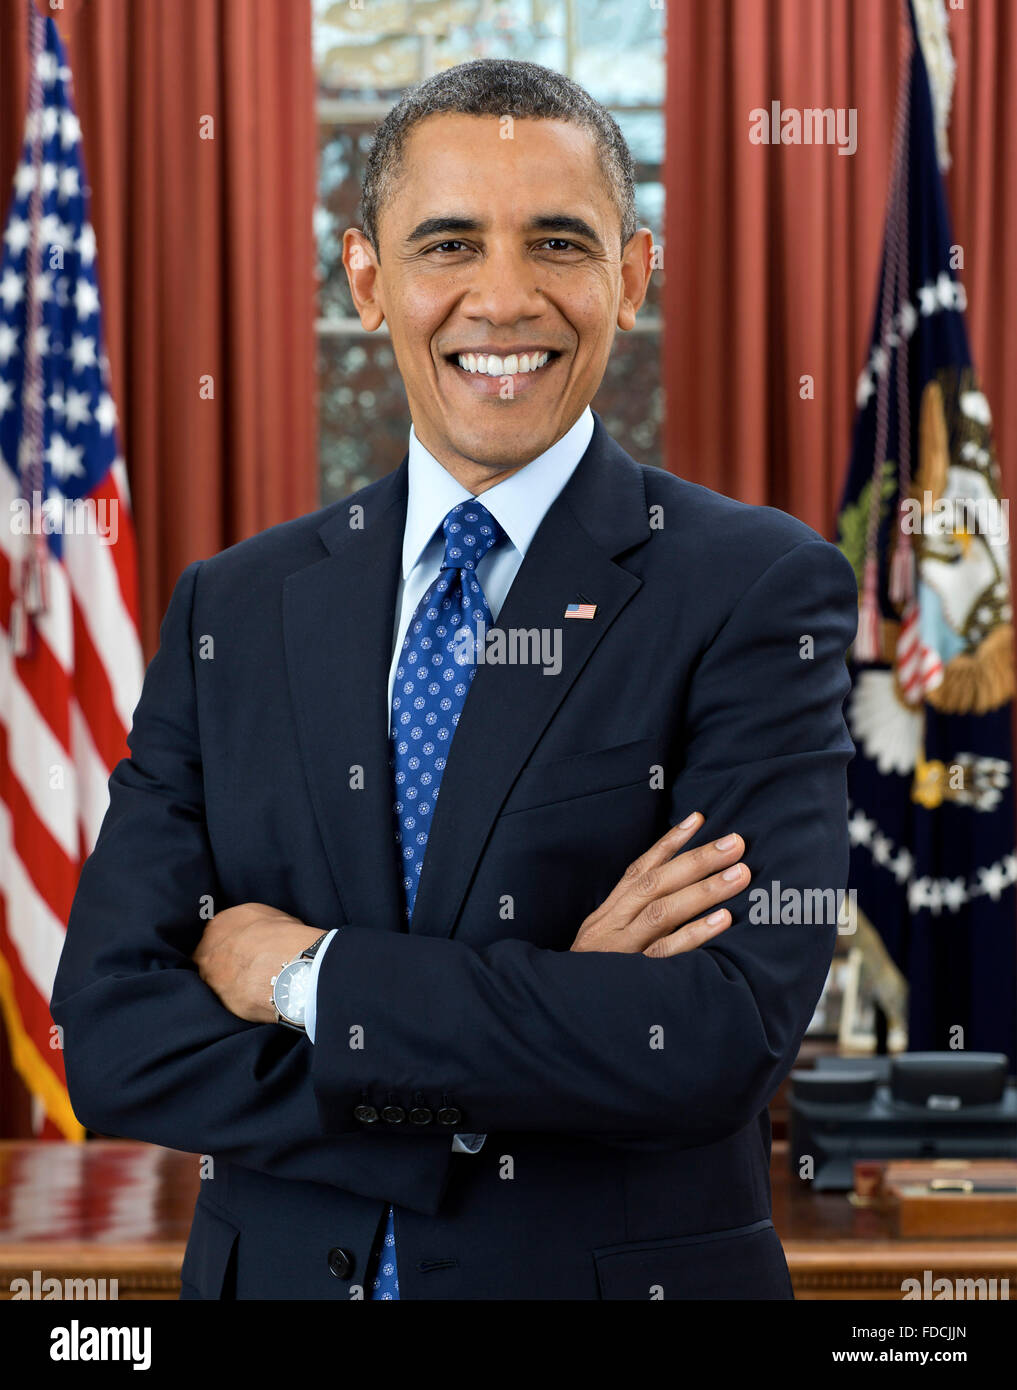 Barack Obam, Ritratto. Ritratto ufficiale della Casa Bianca di Barack Obama, il 44° presidente degli Stati Uniti, dicembre 2012 Foto Stock